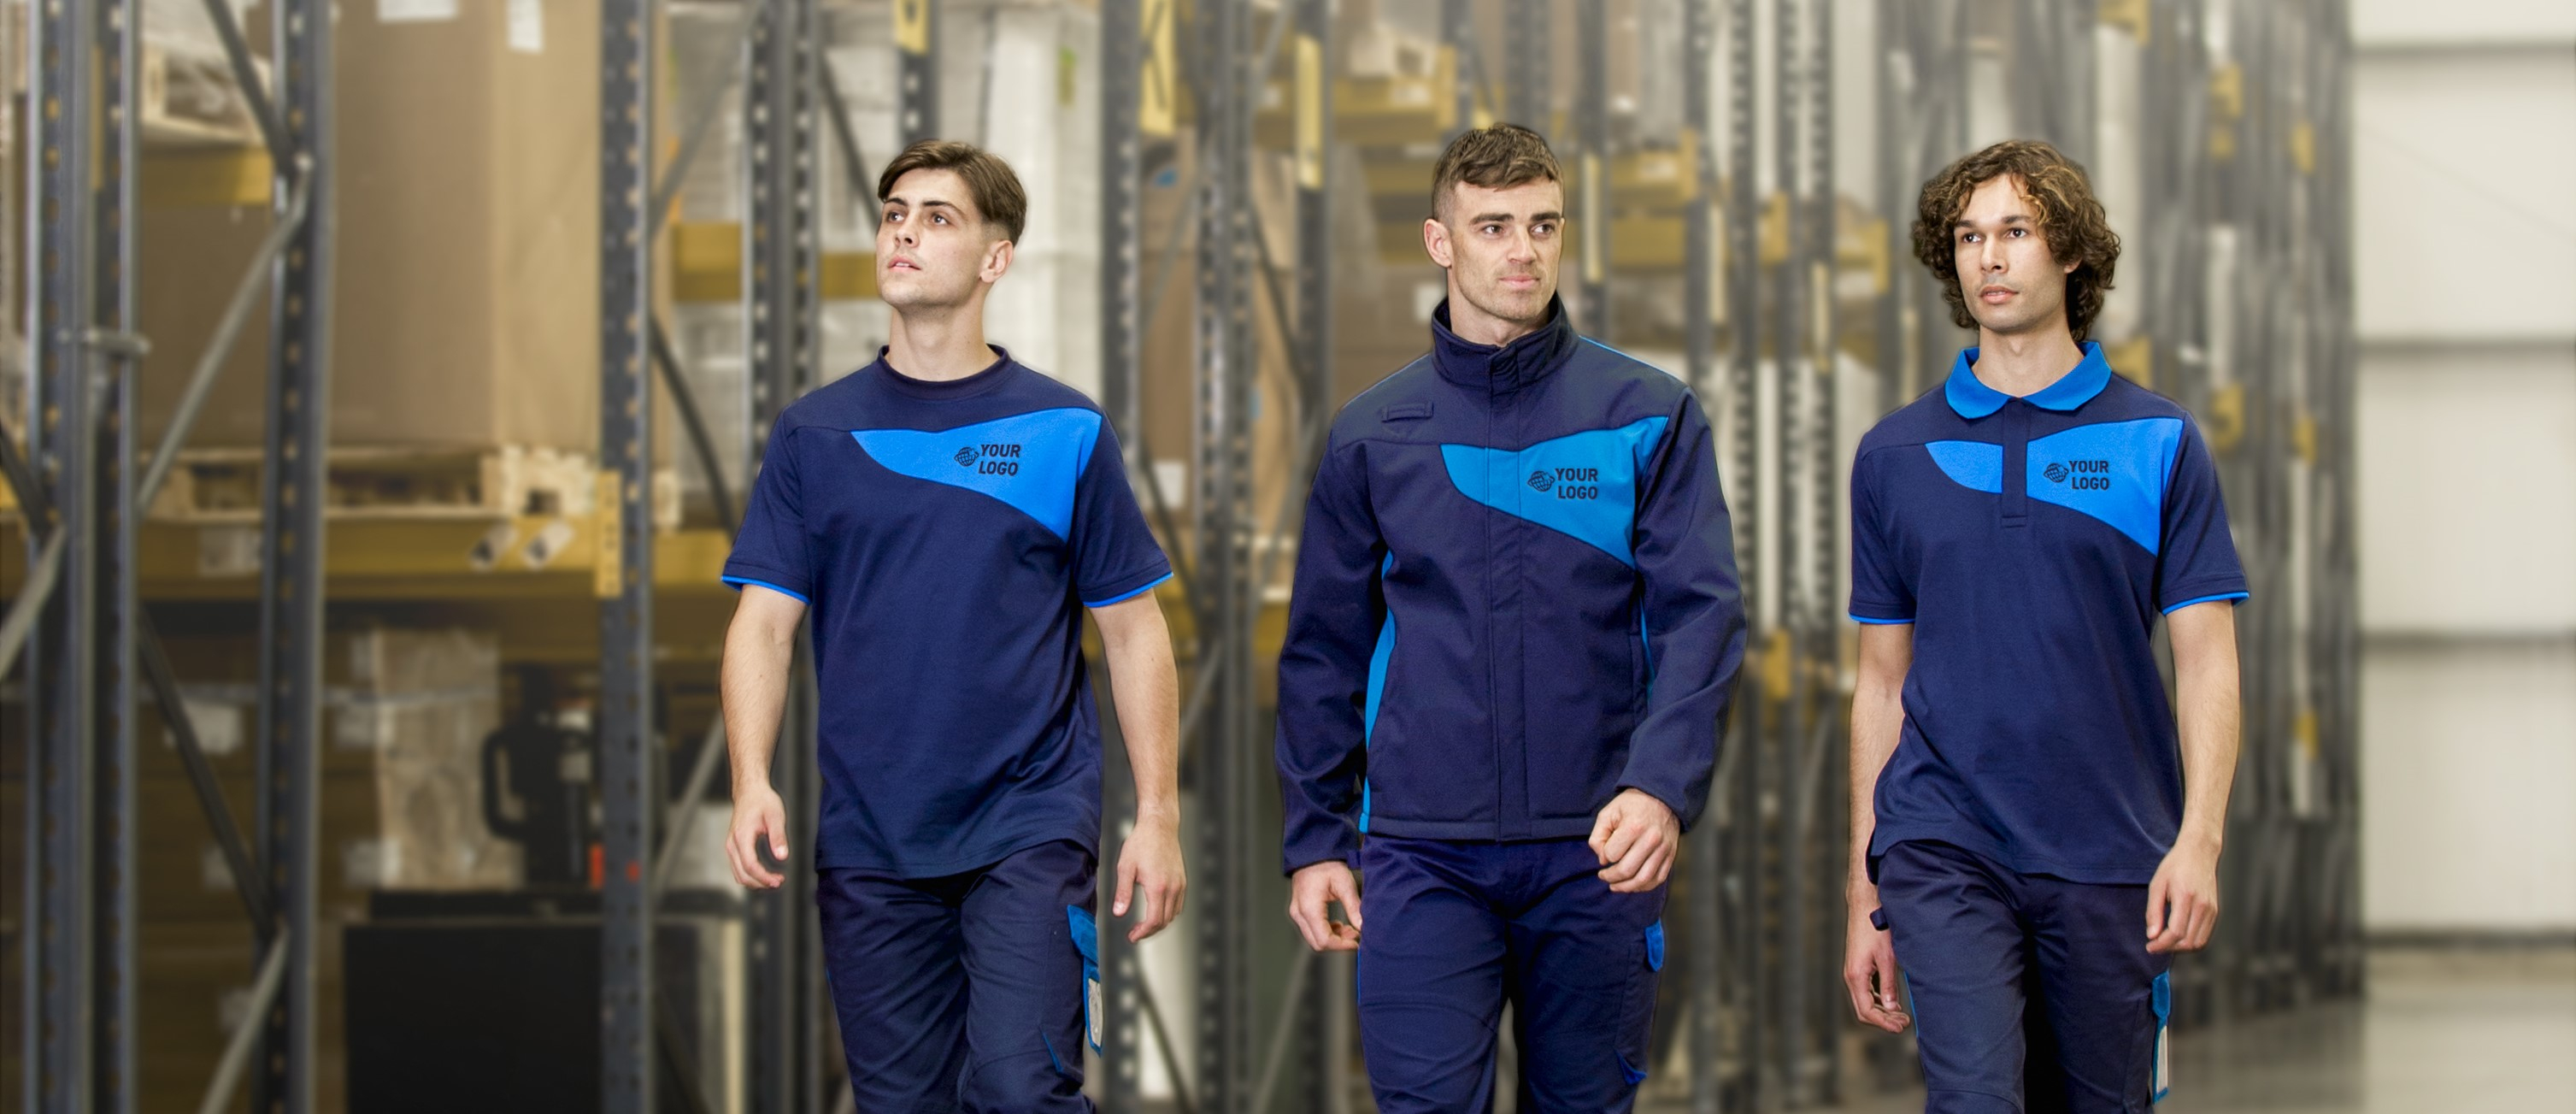 Drei junge Männer in einheitlicher Arbeitskleidung in verschiedenen Blautönen. Im Hintergrund sind Lagerregale zu sehen und im linken unteren Bildbereich findet sich das Logo des Arbeitskleidungsherstellers Portwest.  Hinterlegt ist ein Link zur gesamten PW2-Kollektion.